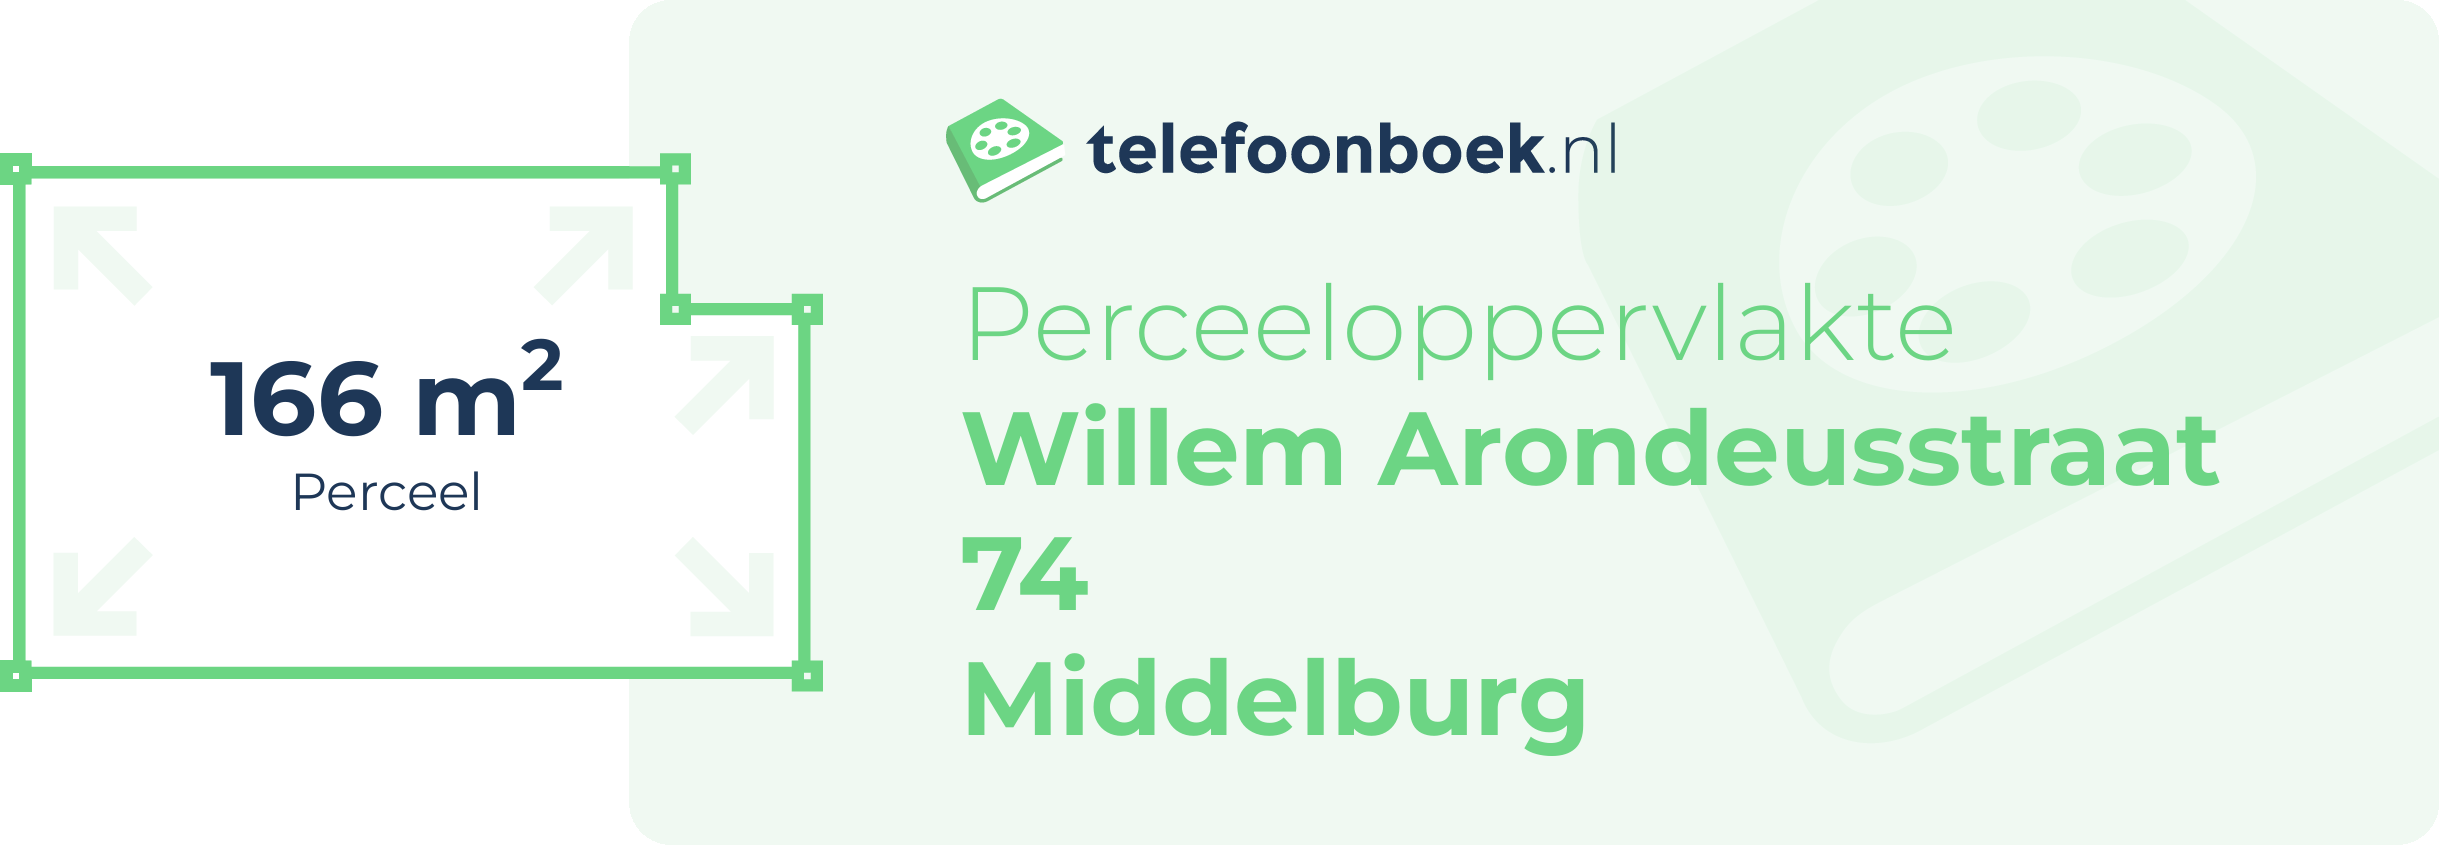 Perceeloppervlakte Willem Arondeusstraat 74 Middelburg